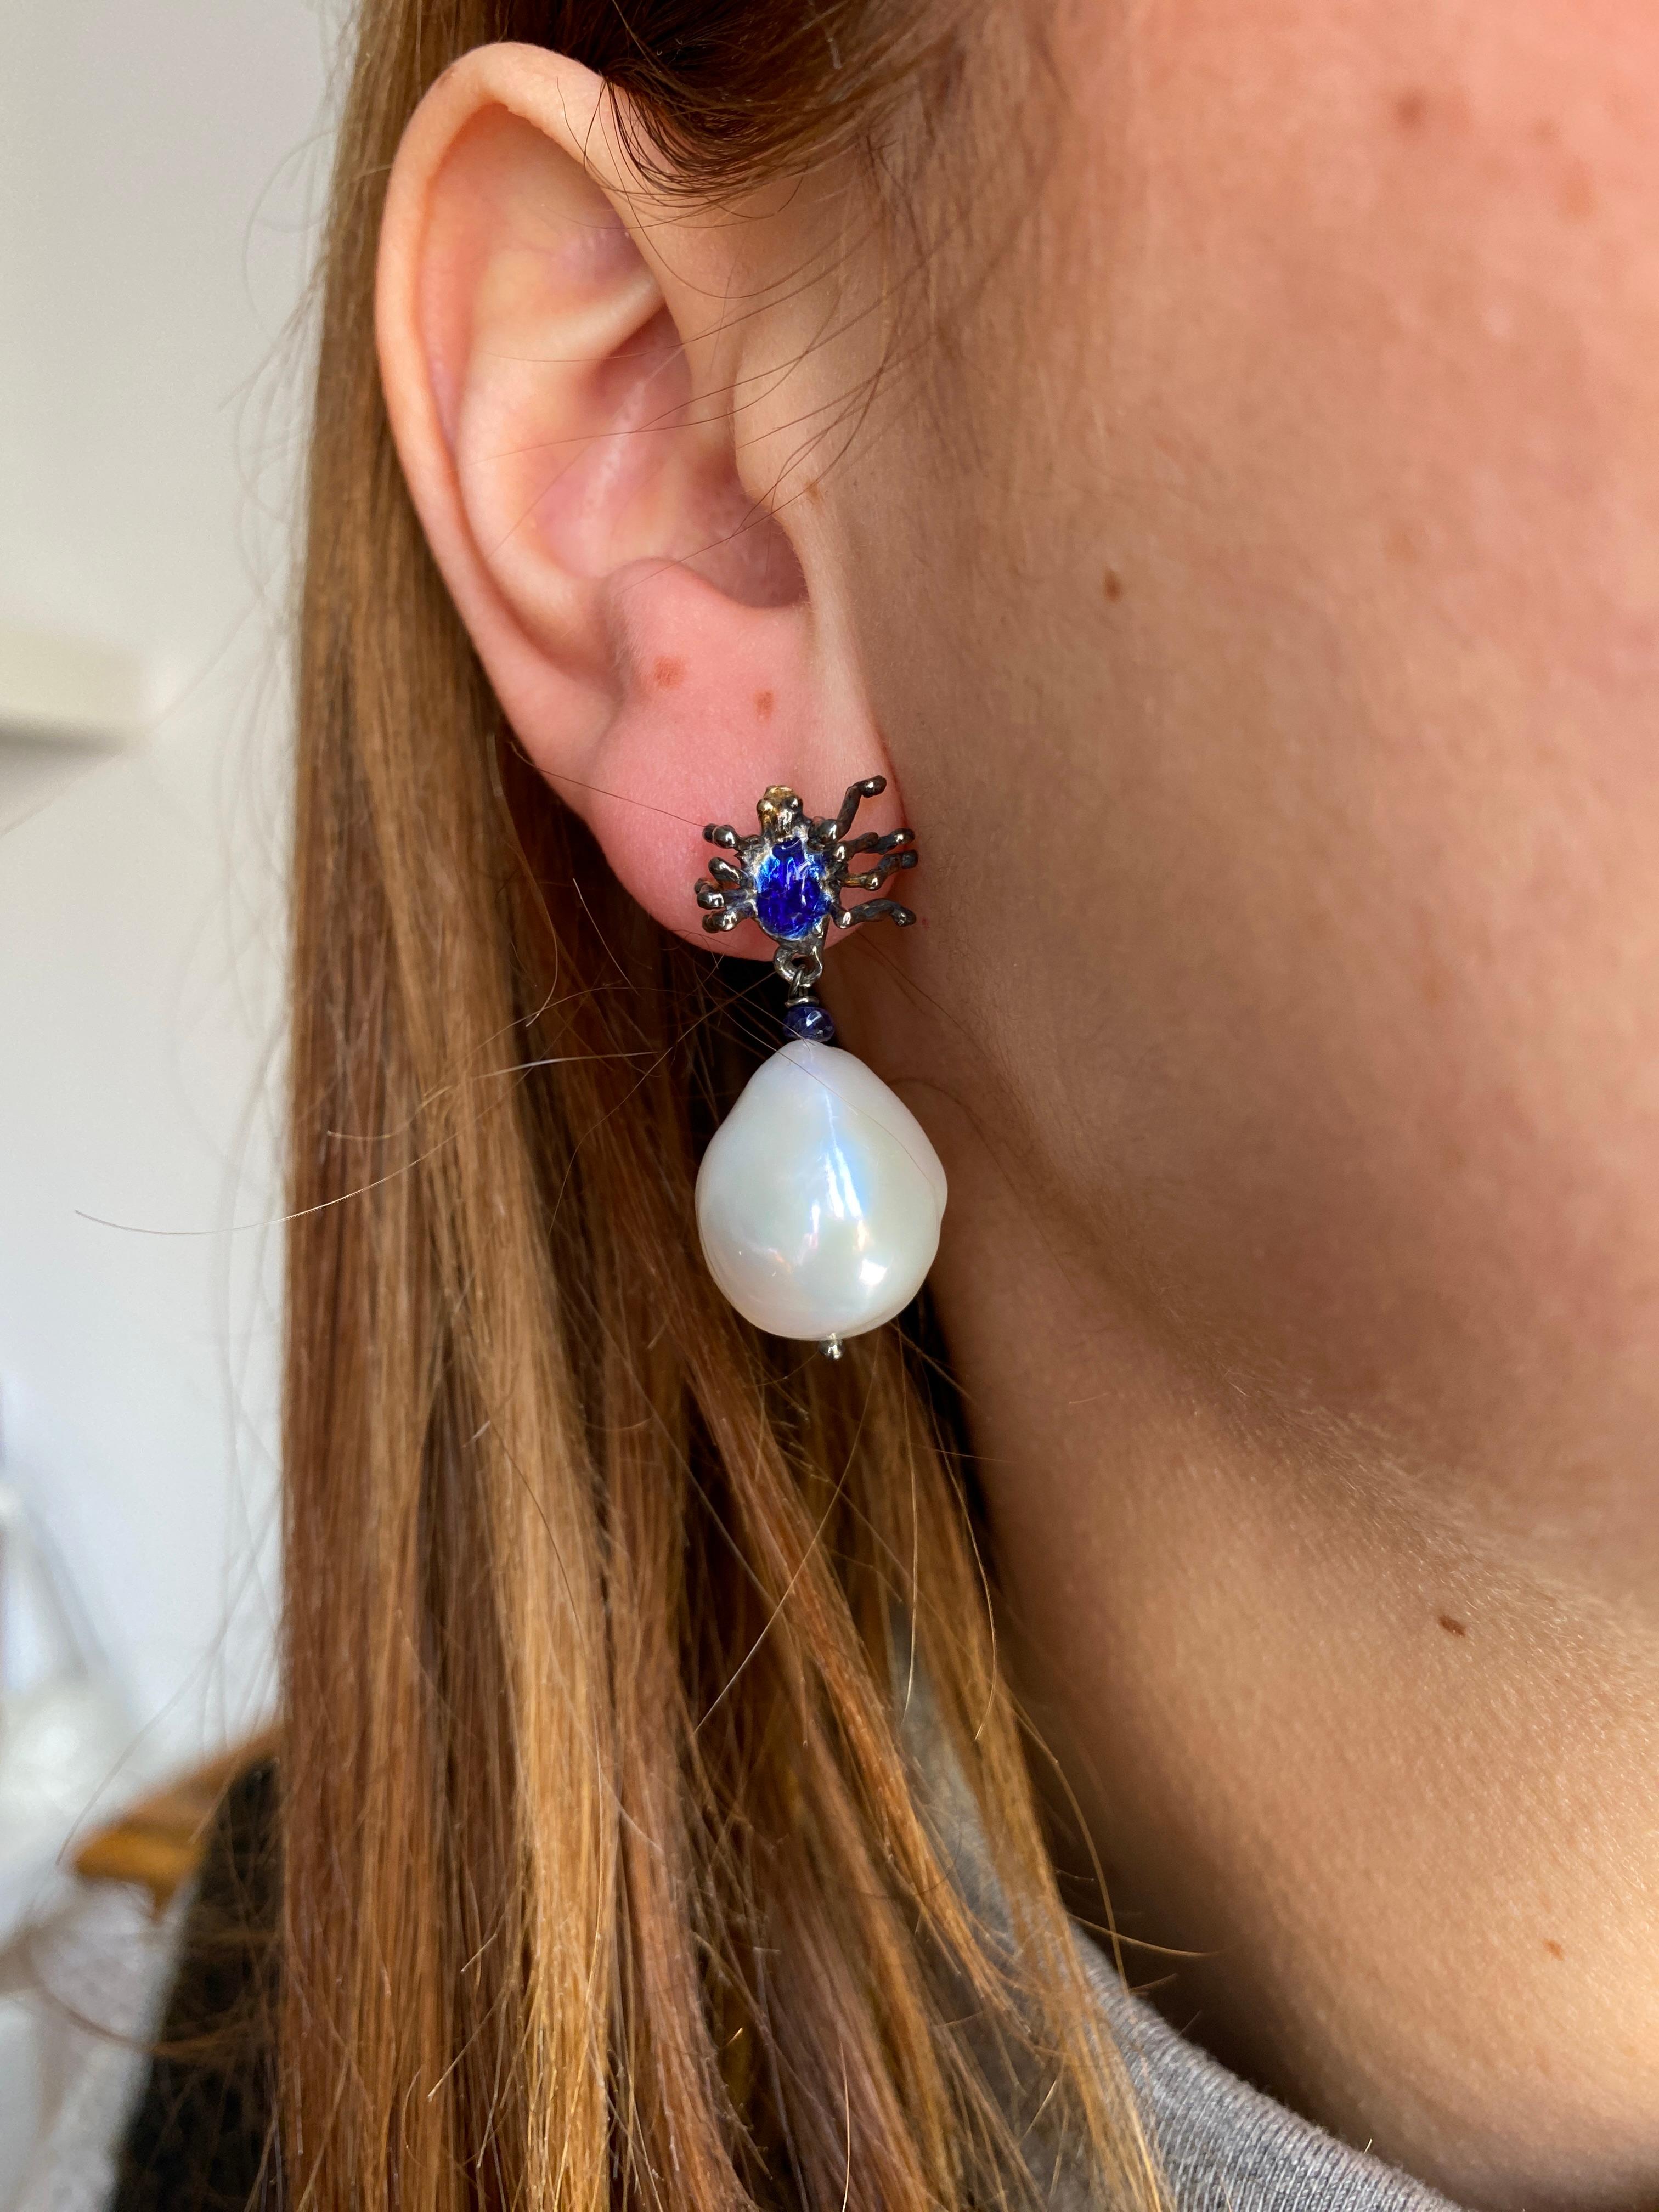 Rossella Ugolini präsentiert ein Paar Ohrringe, handgefertigt aus brüniertem 18-karätigem Weißgold und von Hand glasiert in einem faszinierenden, leuchtend blauen Farbton.
Diese Ohrringe zeichnen sich durch ein einzigartiges Spinnendesign aus, das